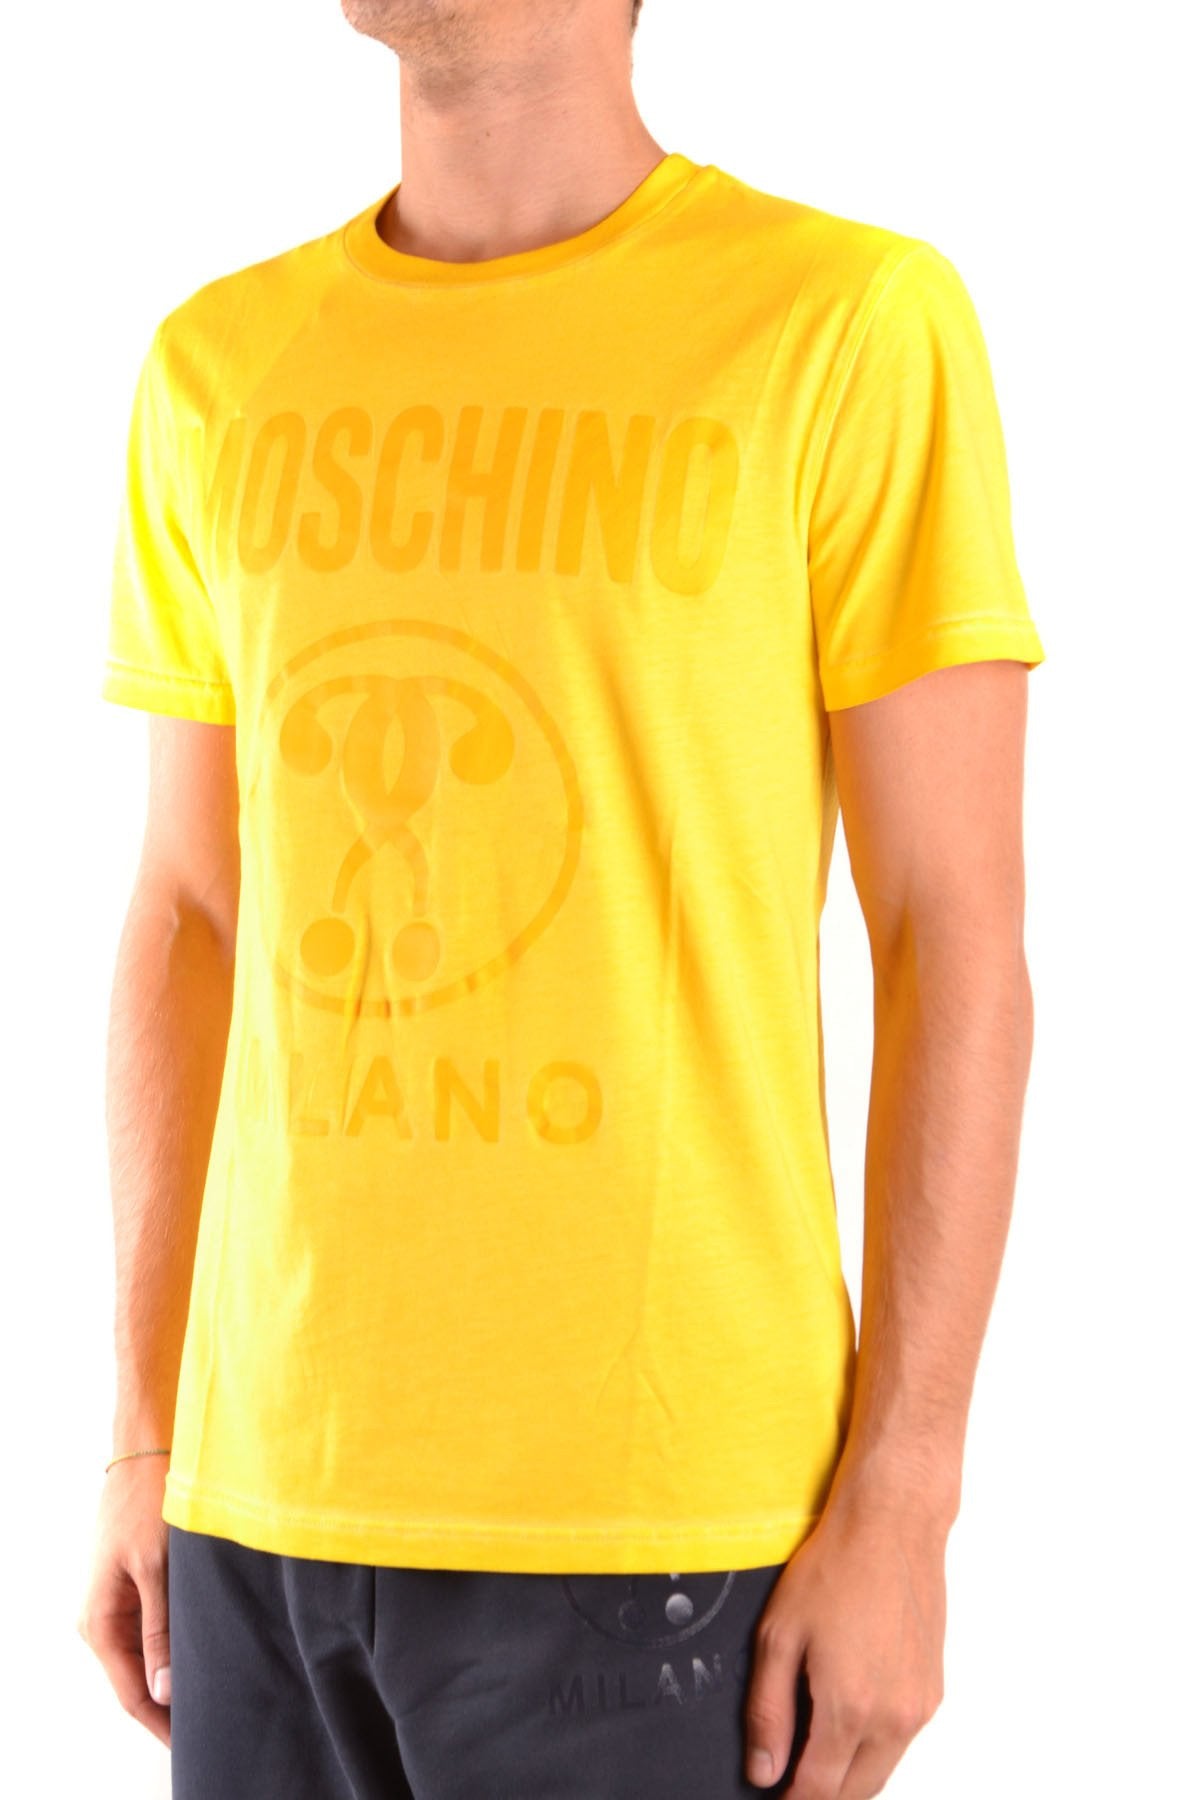 moschino Moschino T-Shirt Uomo